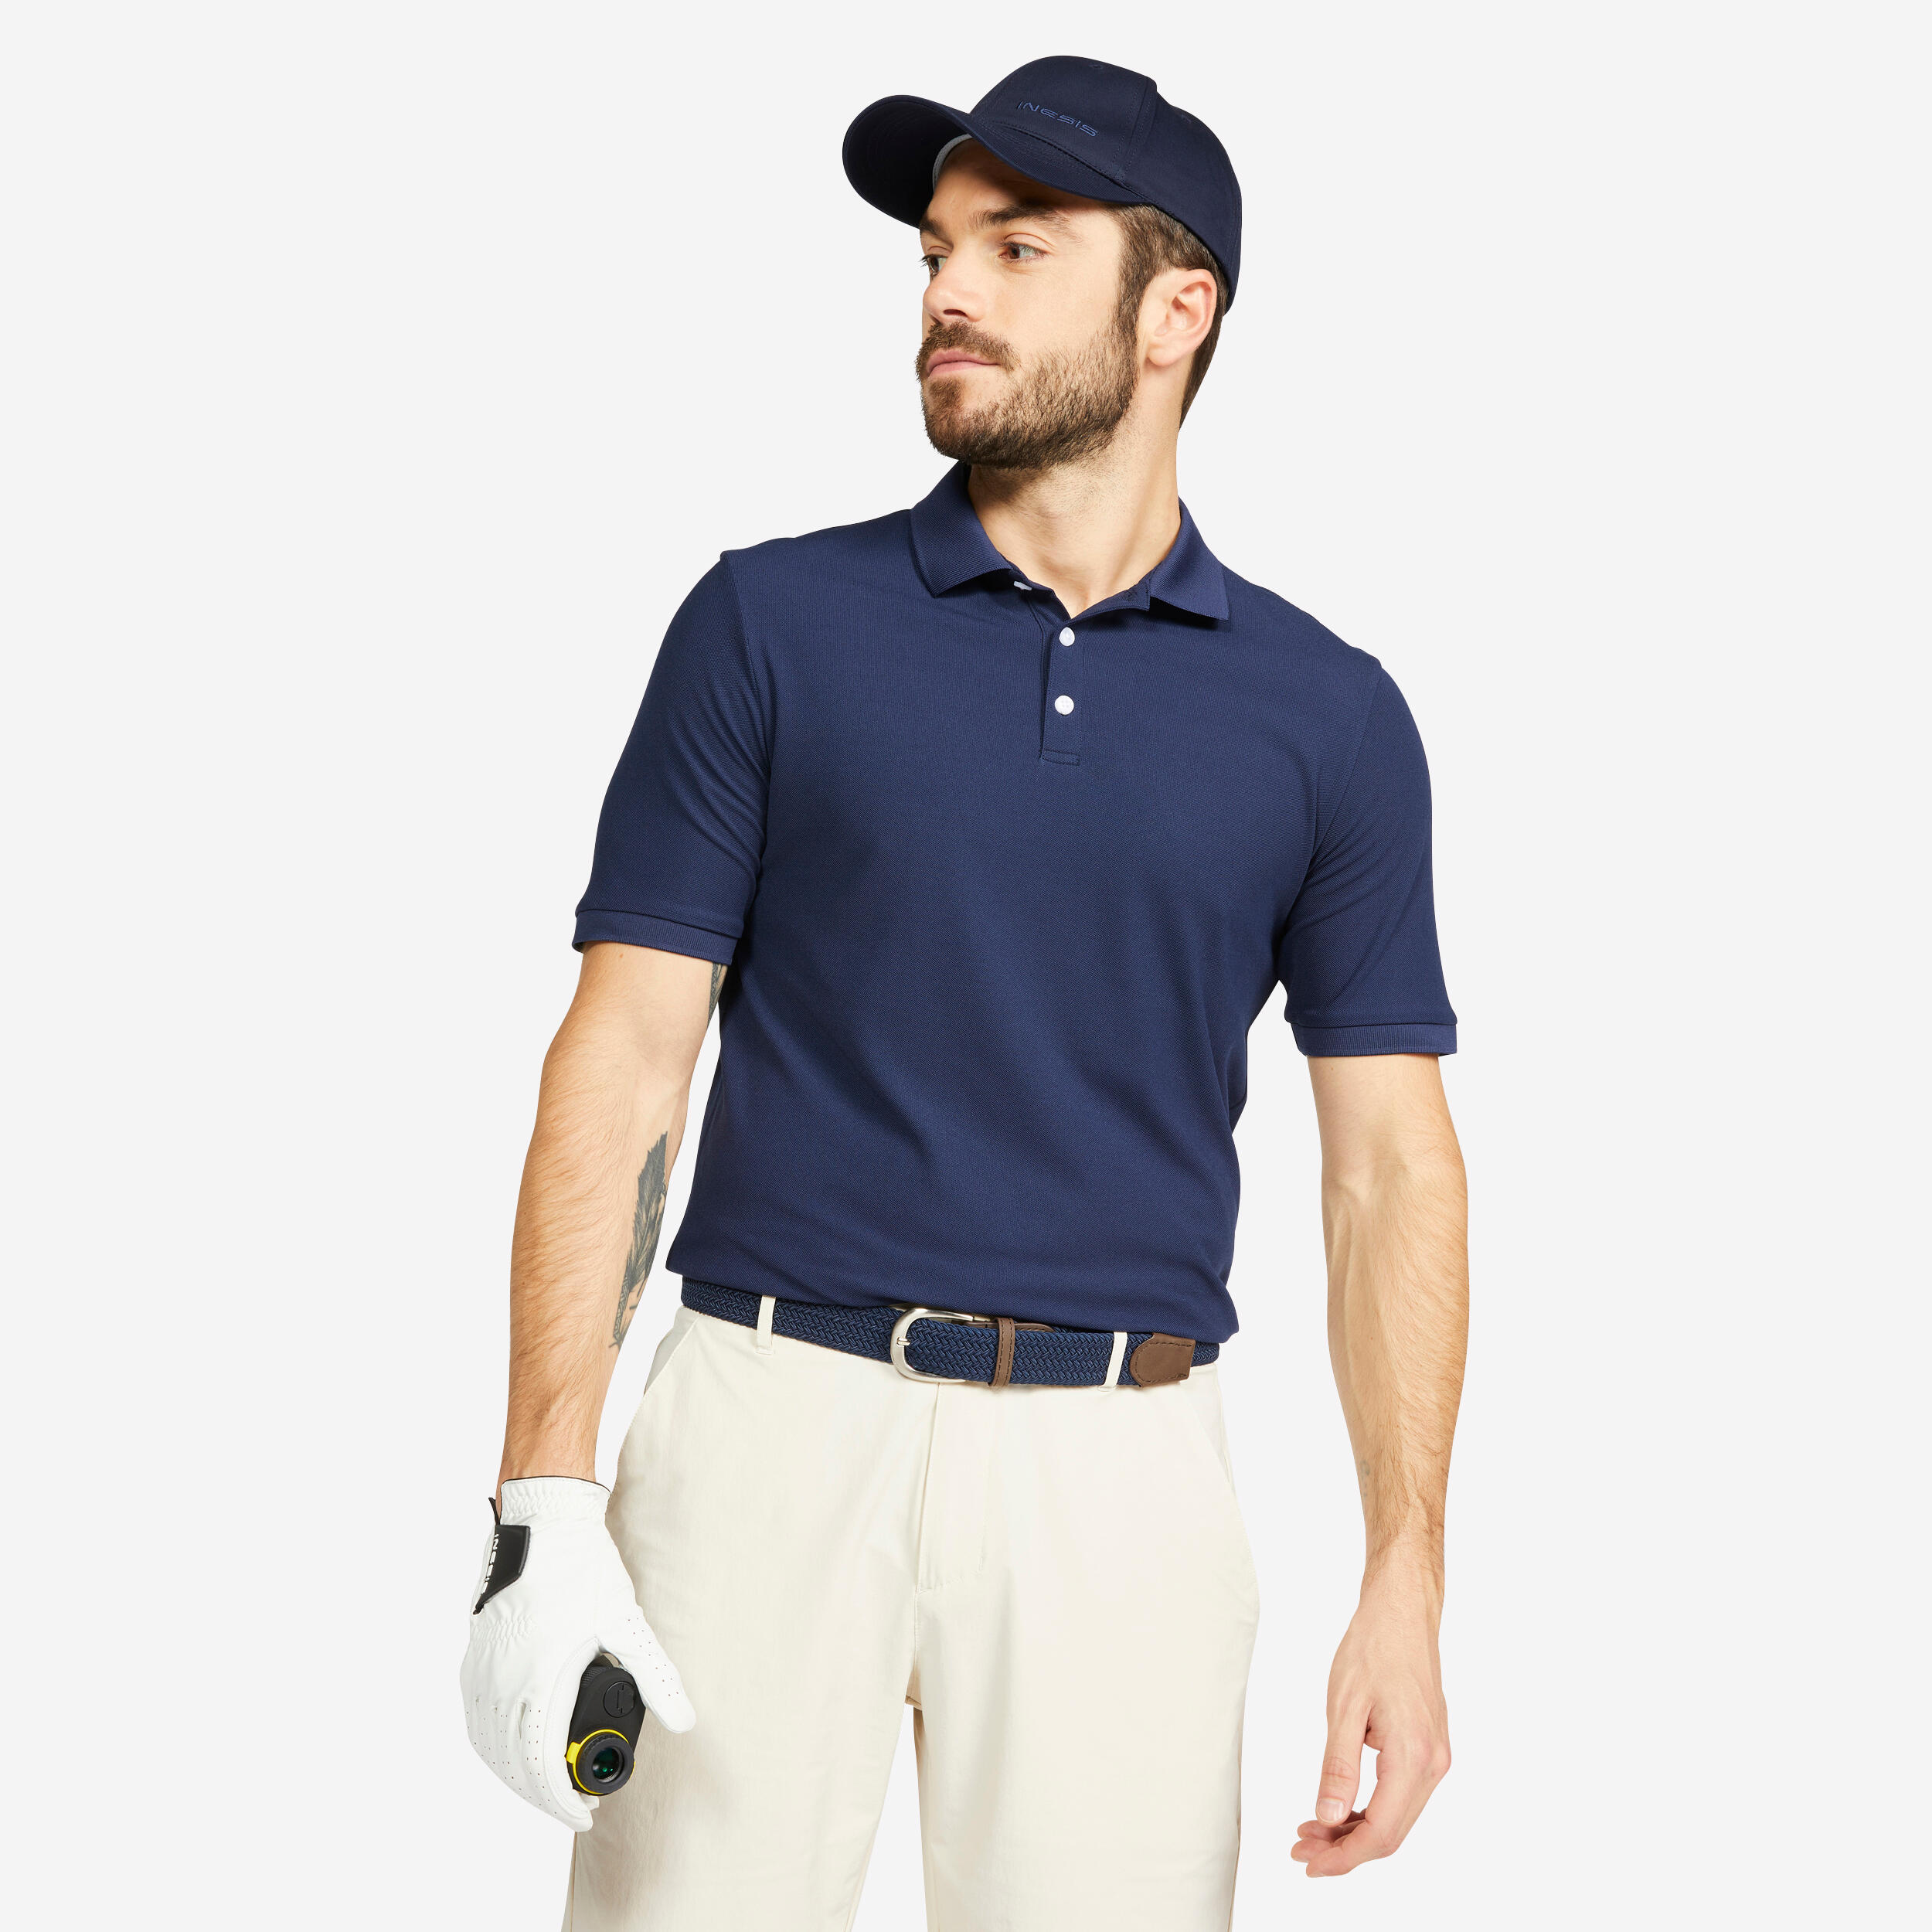 Men's short-sleeved golf polo shirt - MW100 white